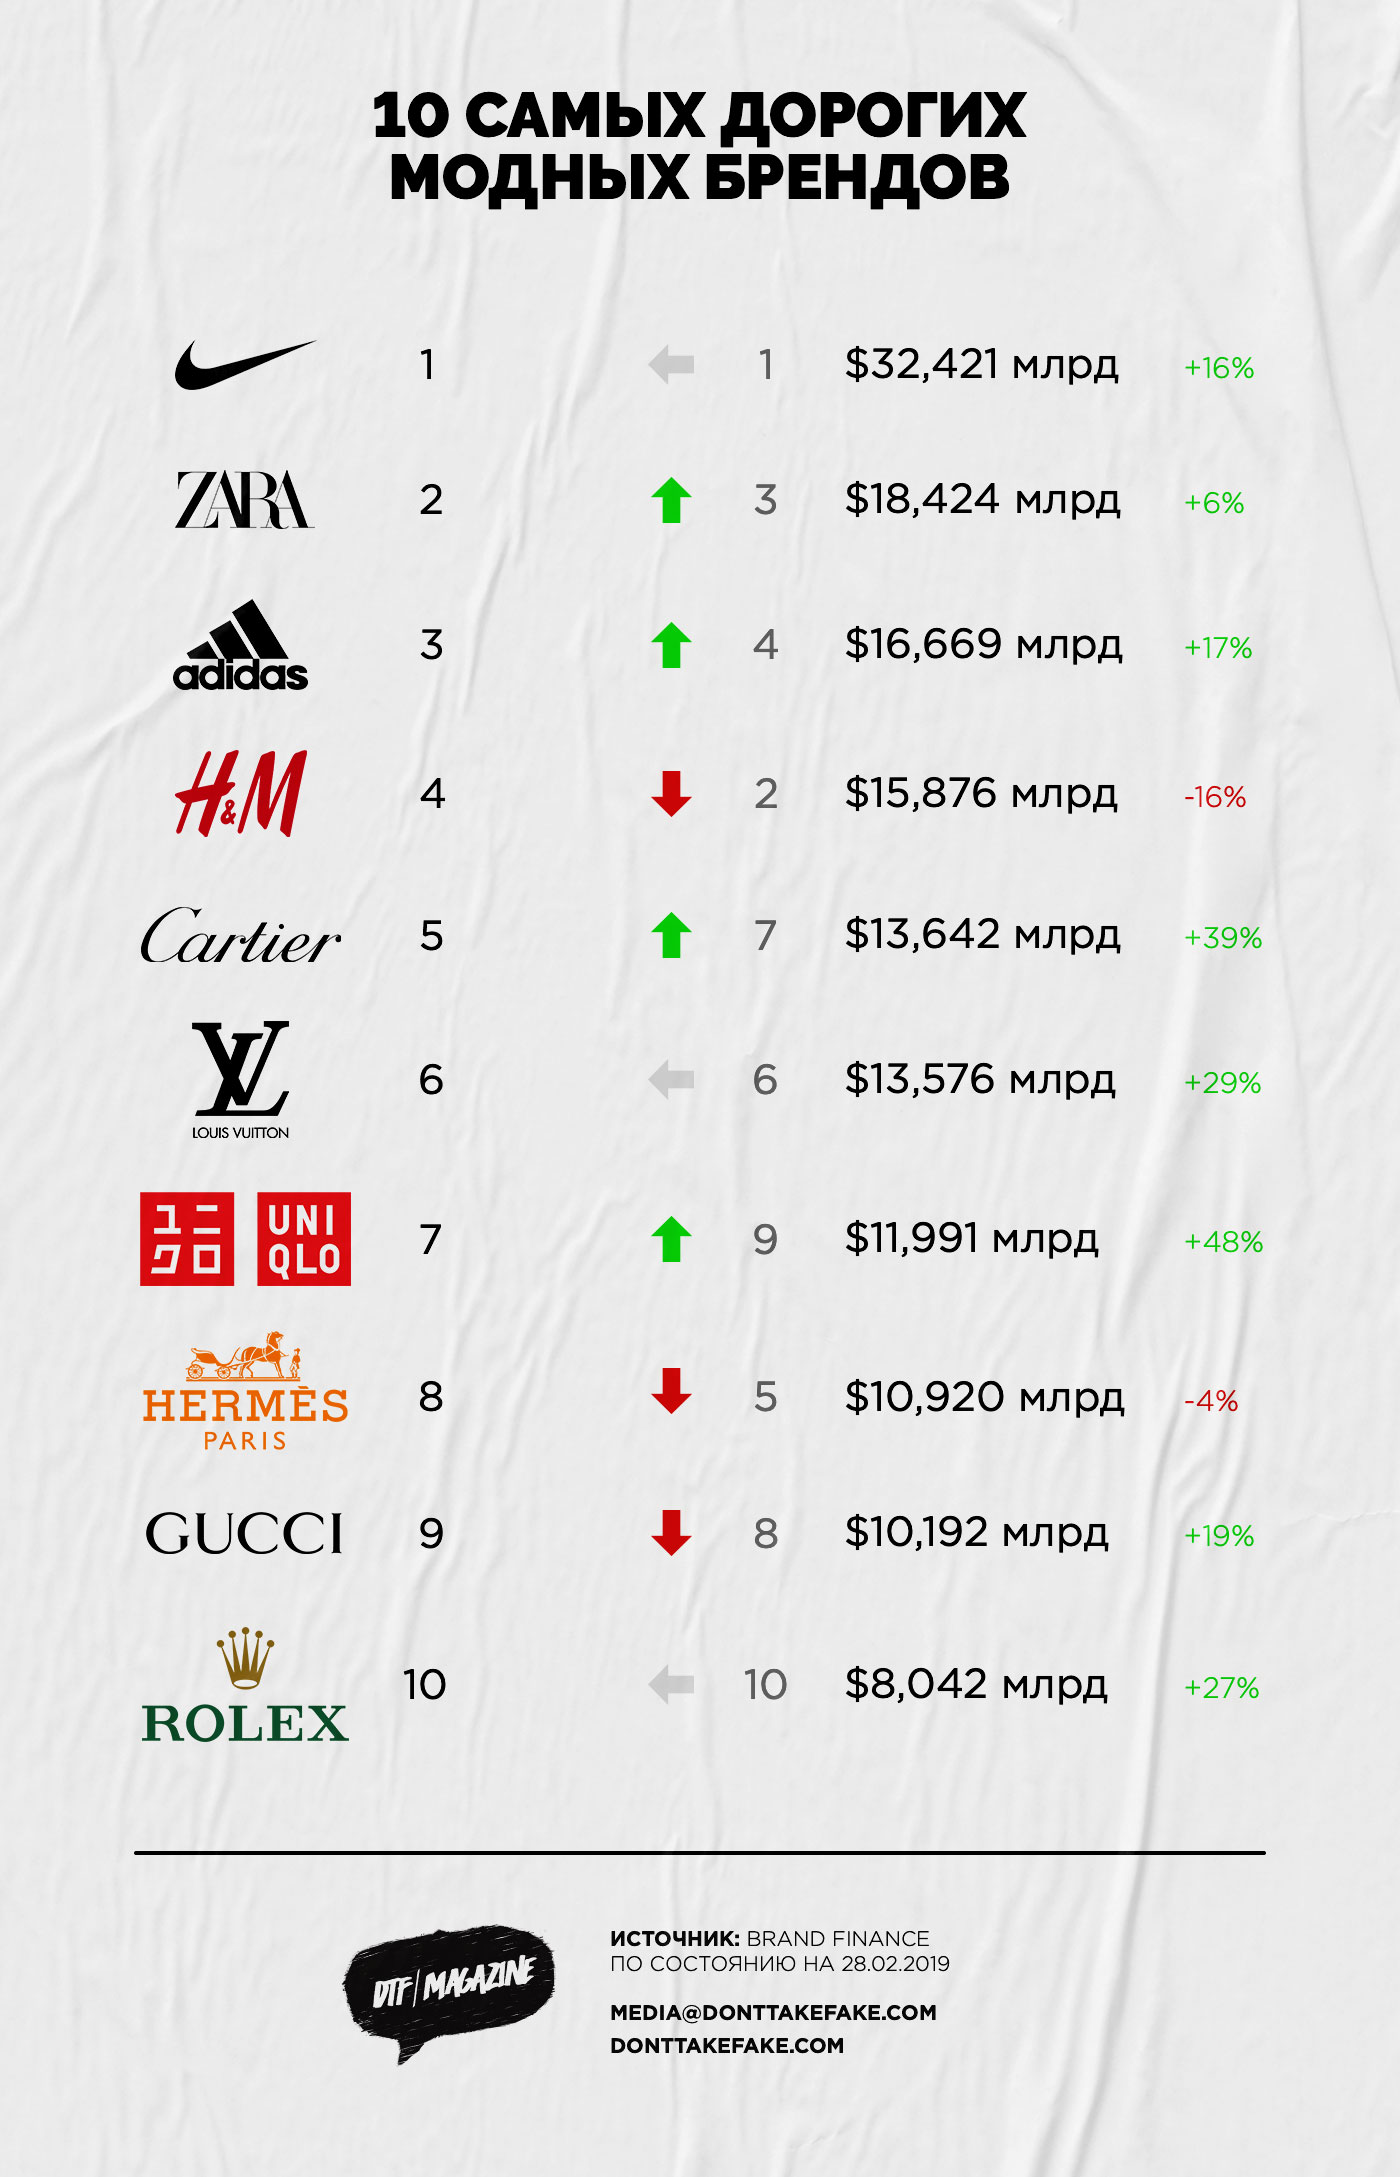 Самые дорогие бренды одежды в мире